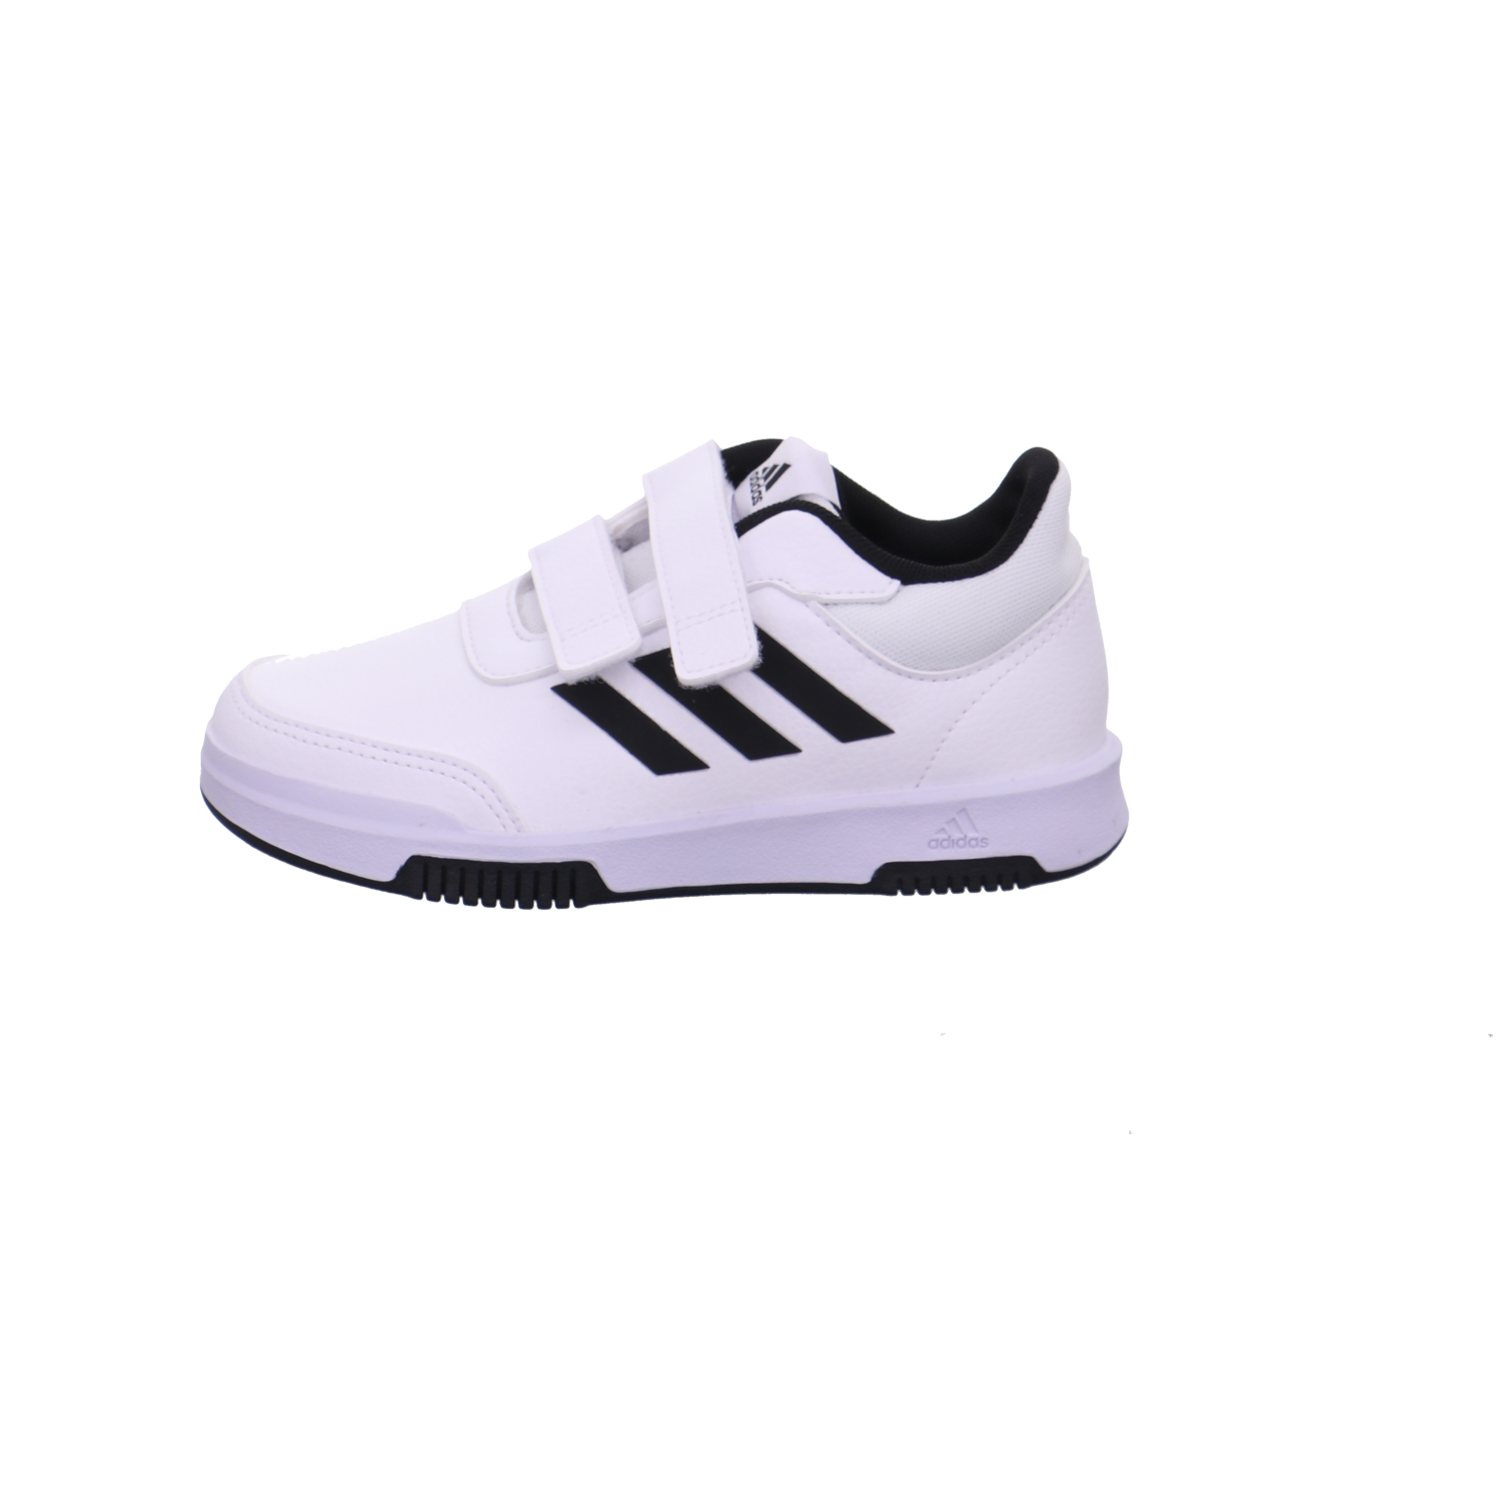 Adidas Halbschuhe weiß-schwarz Bild1